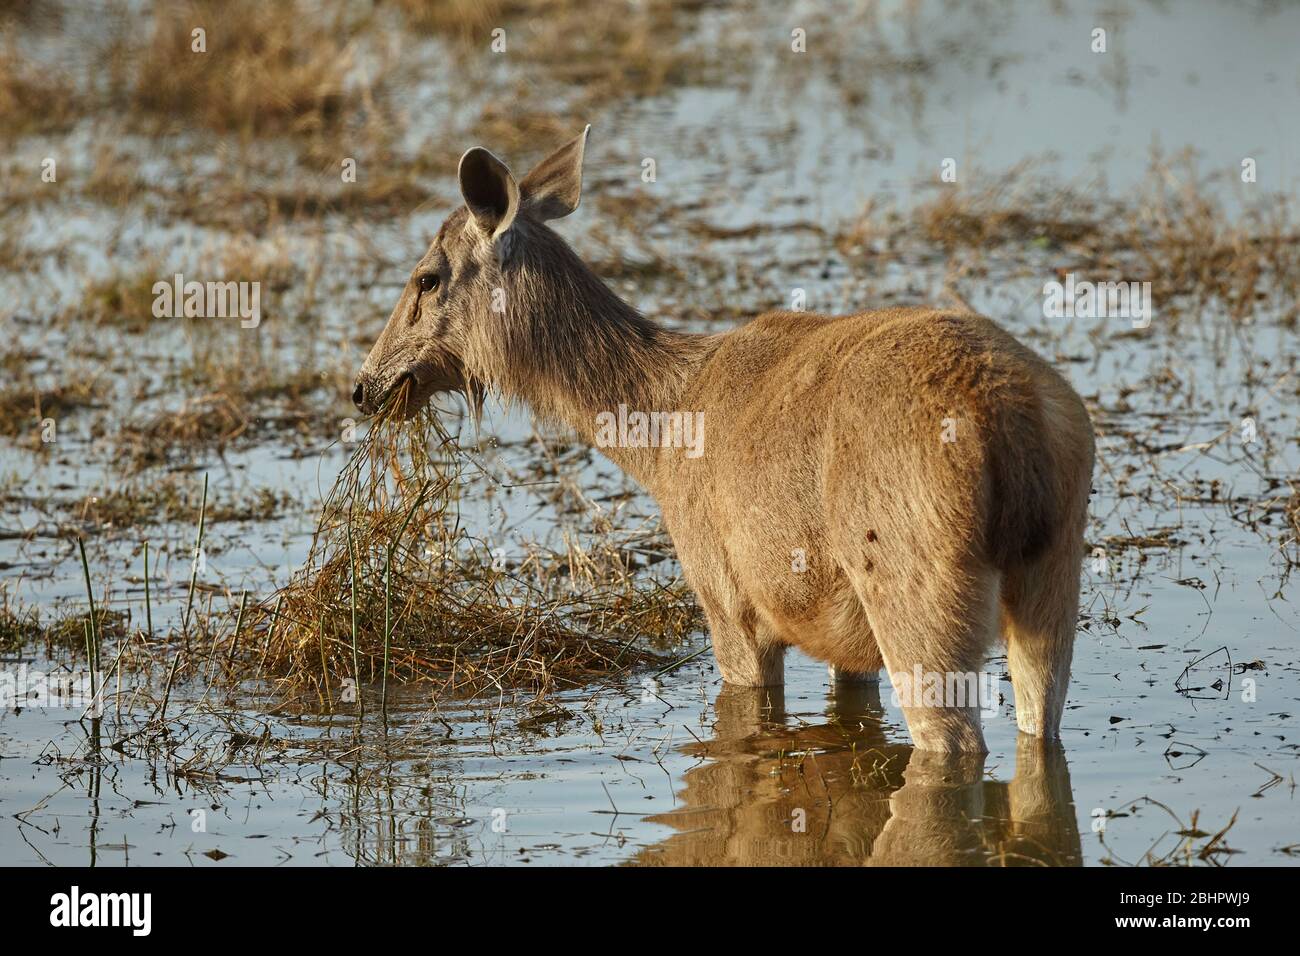 Sambar deer at Malik talao or lake Ranthambhore forest, India. Stock Photo